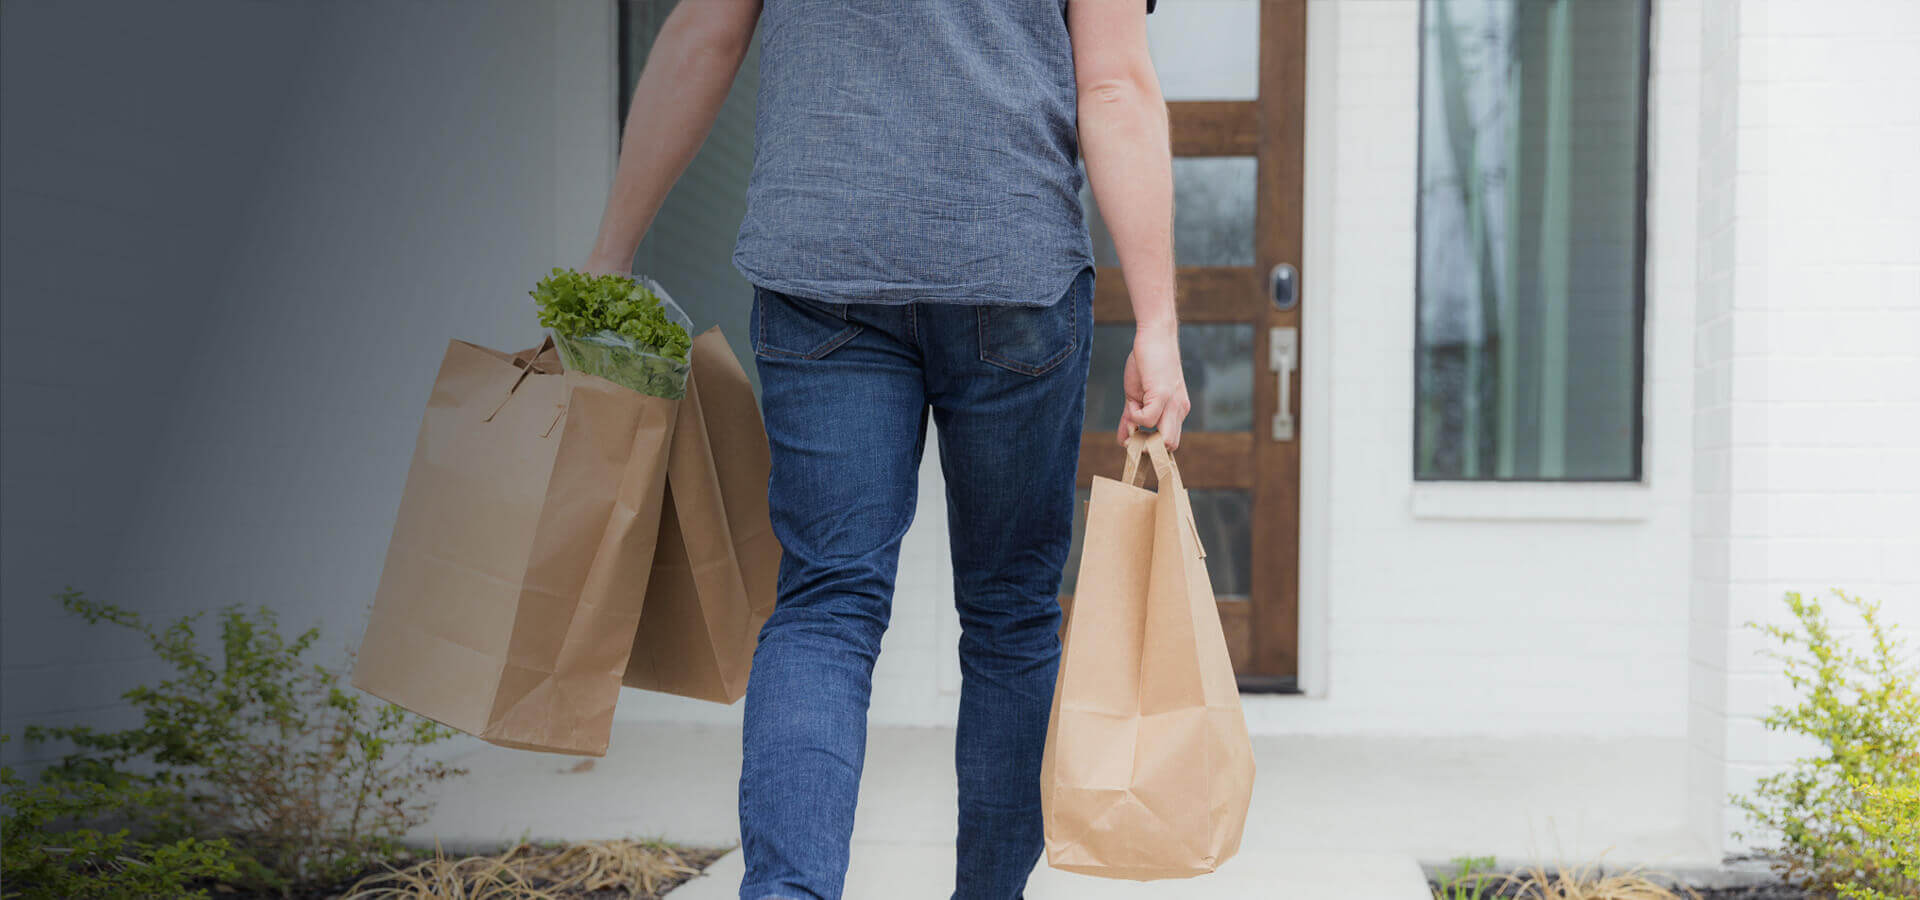 Eine Frau läuft auf ihre Haustür zu, in beiden Händen hält sie eine Einkaufstüte.